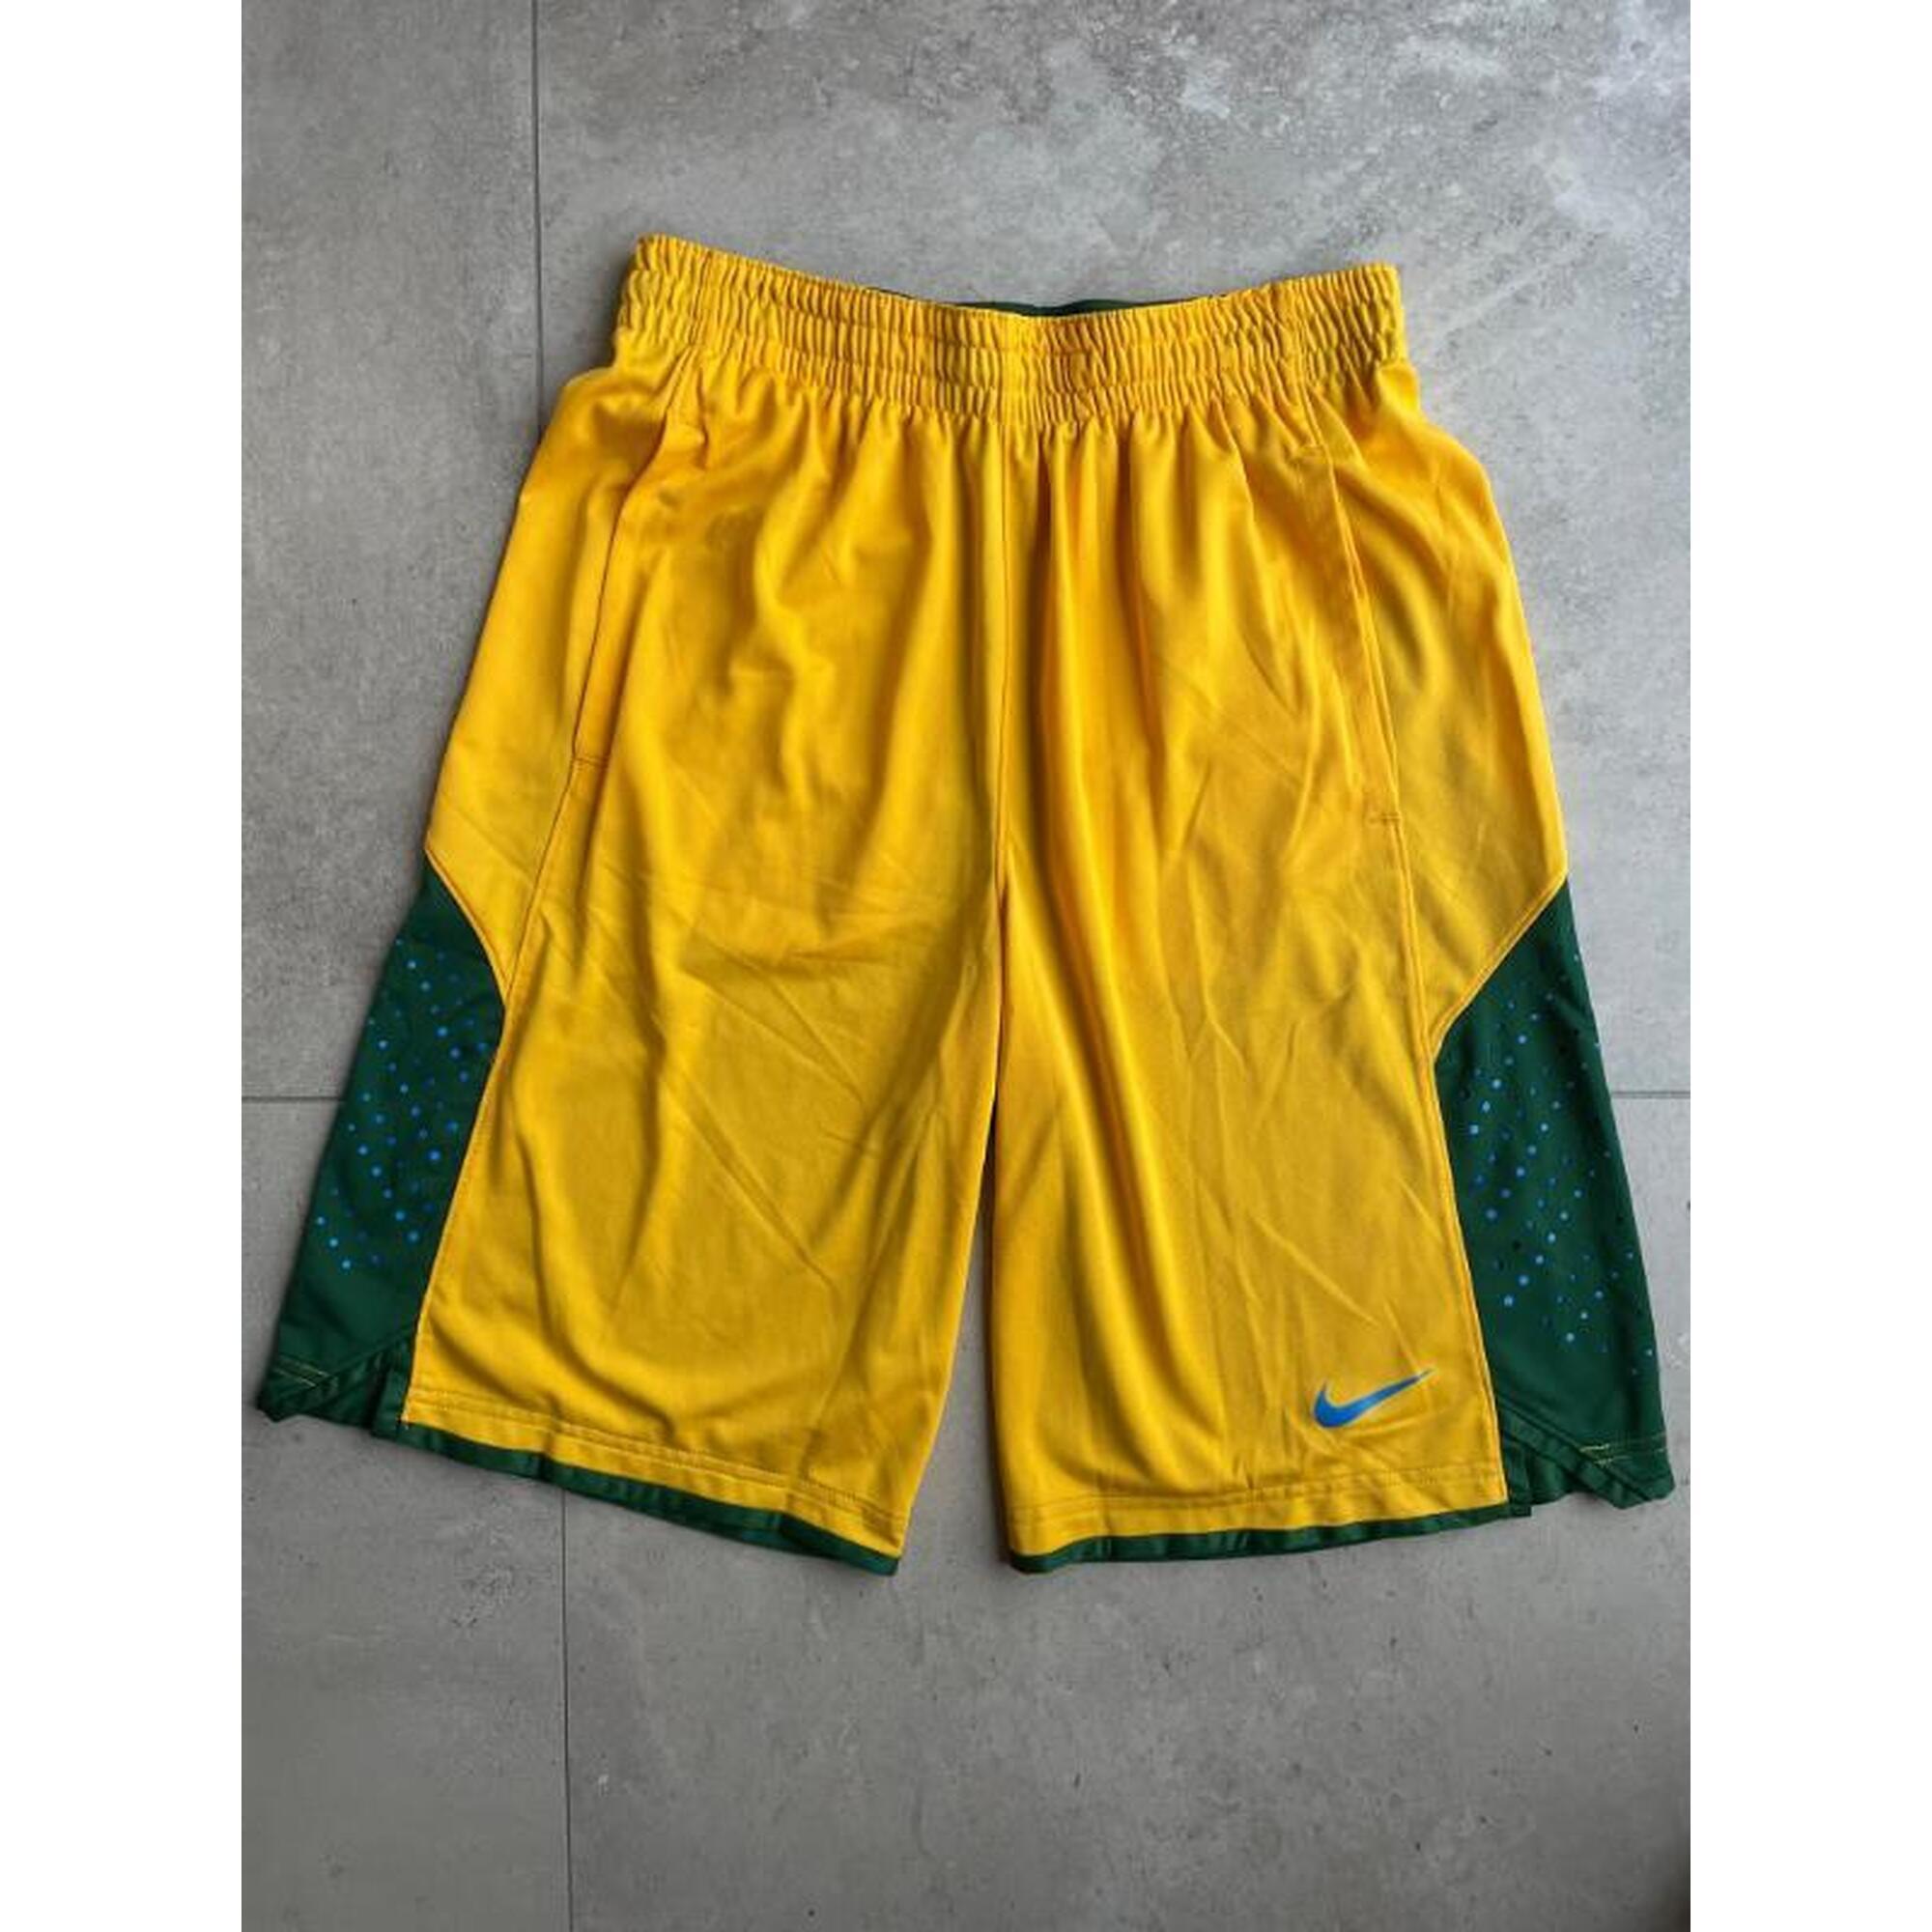 C2C - Short de basket Nike jaune/vert